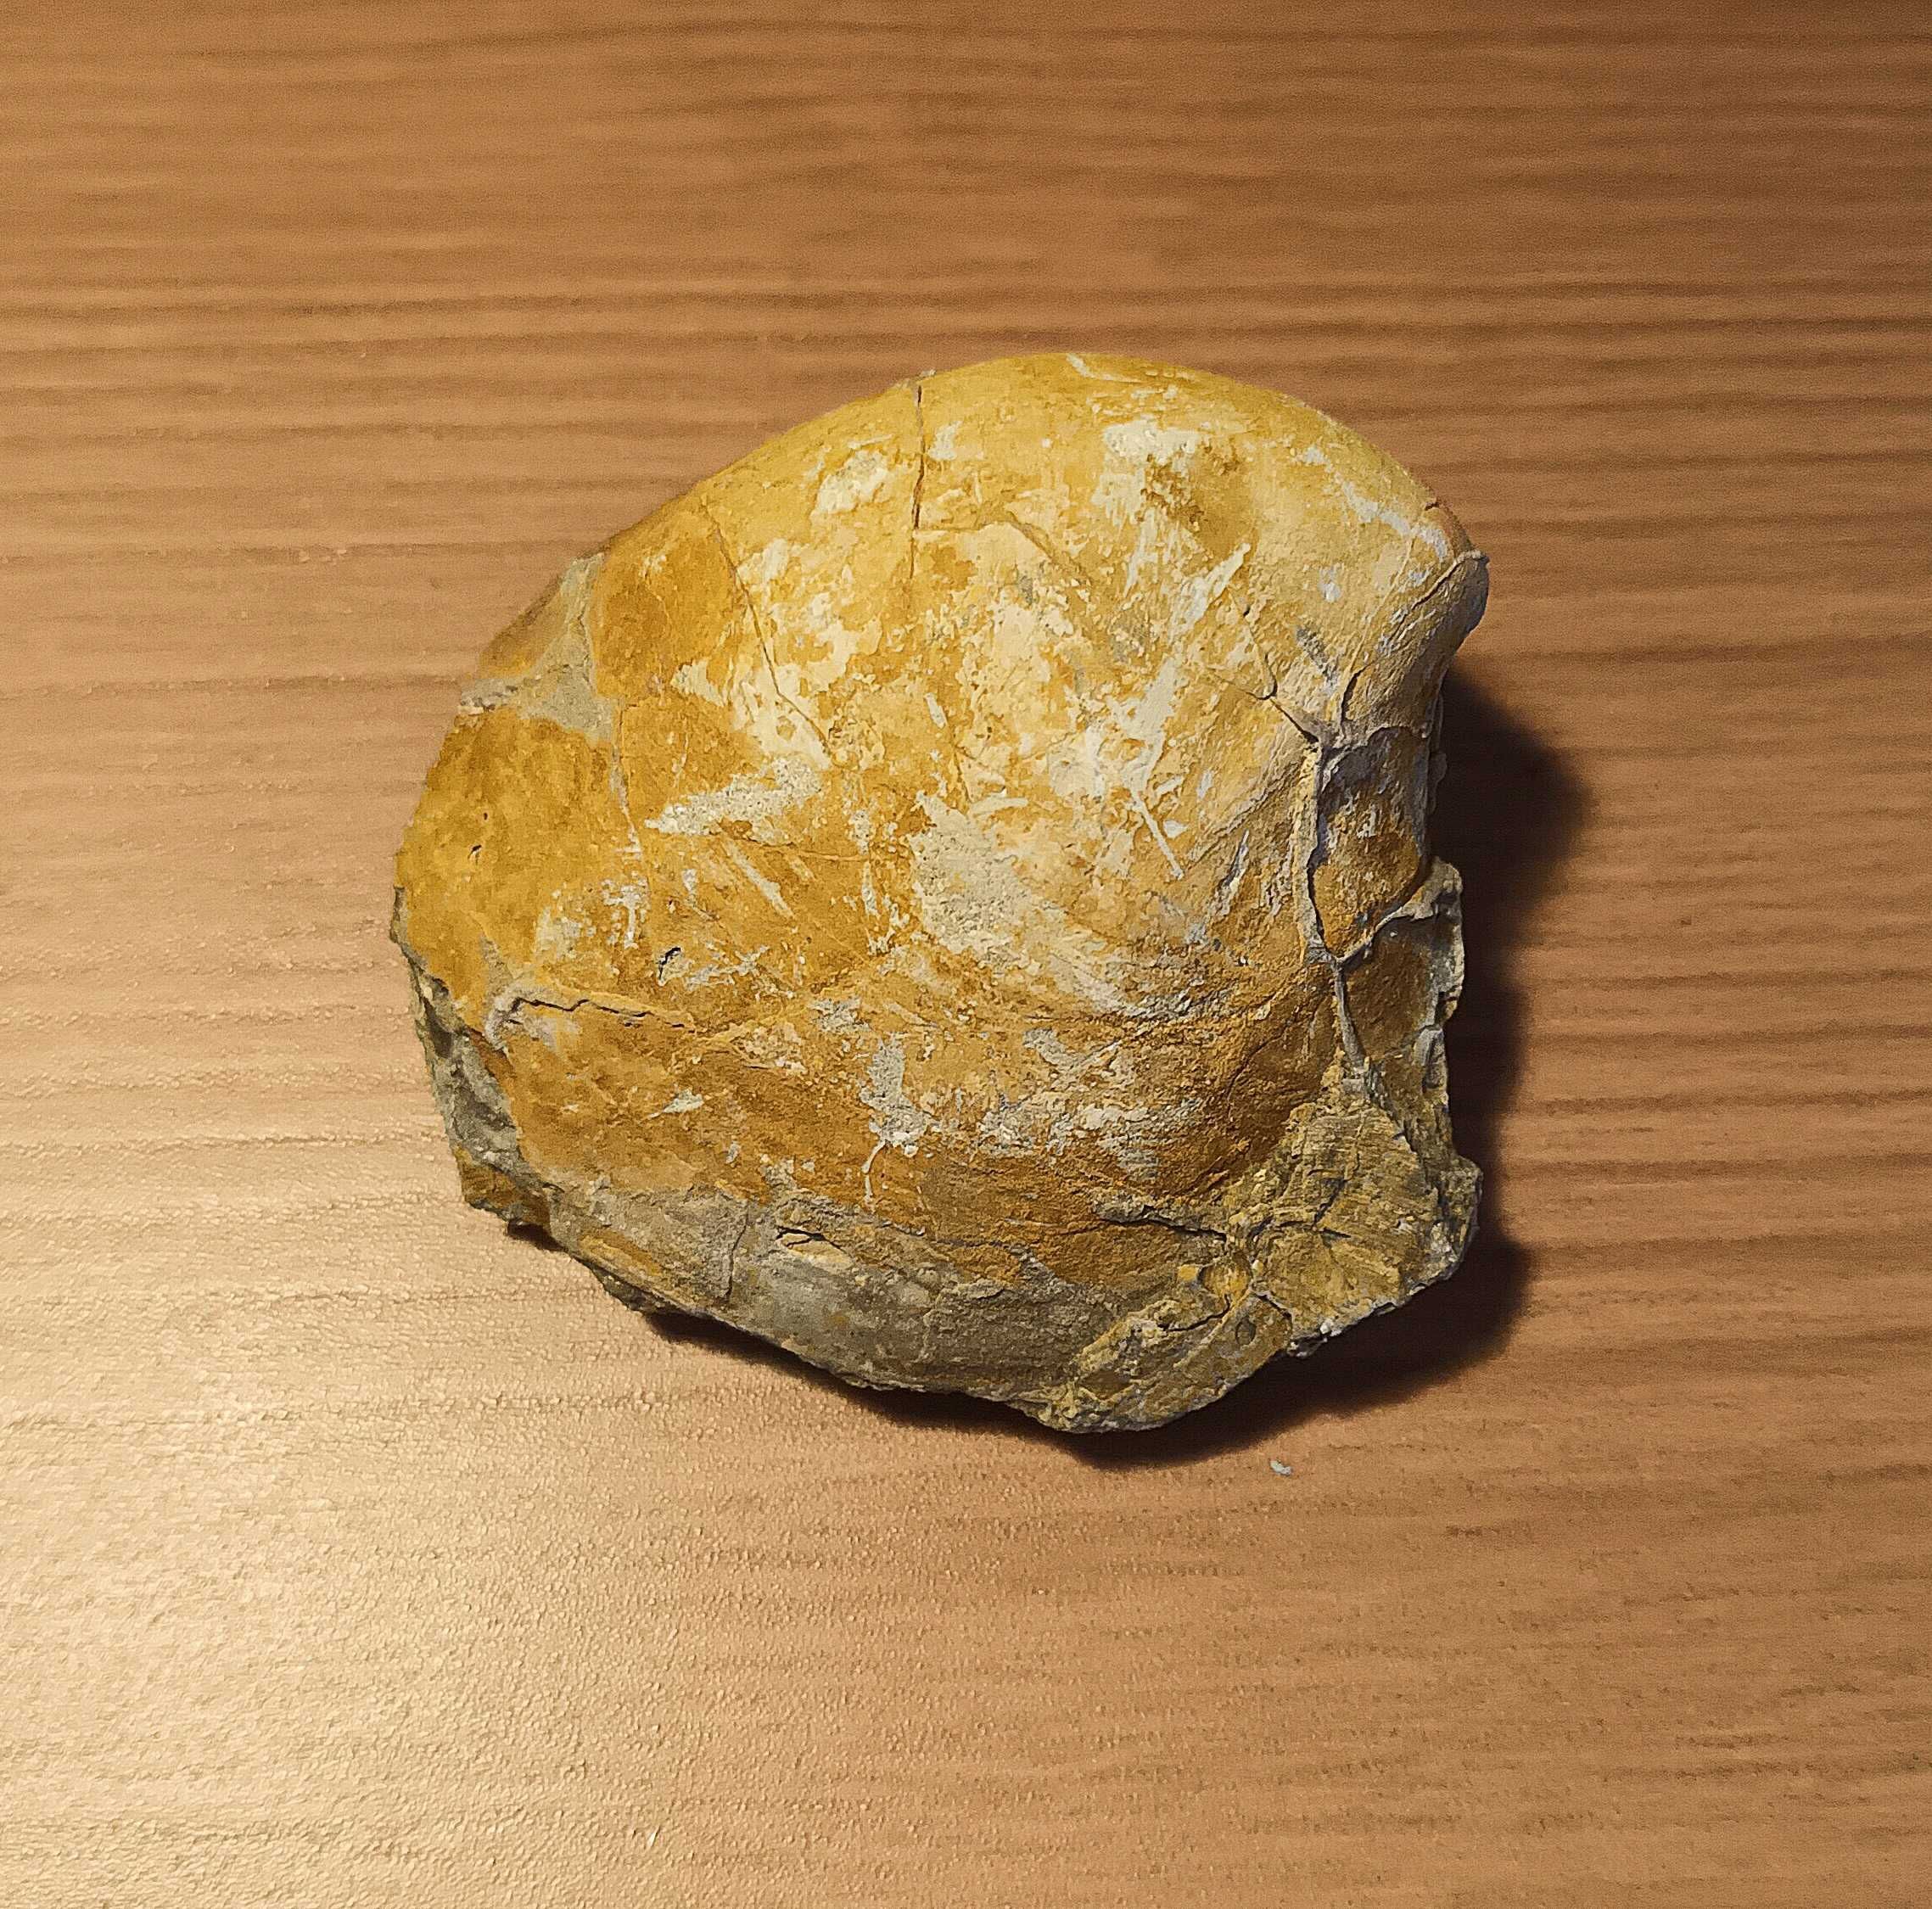 Fossil de bivalve do Miocenico